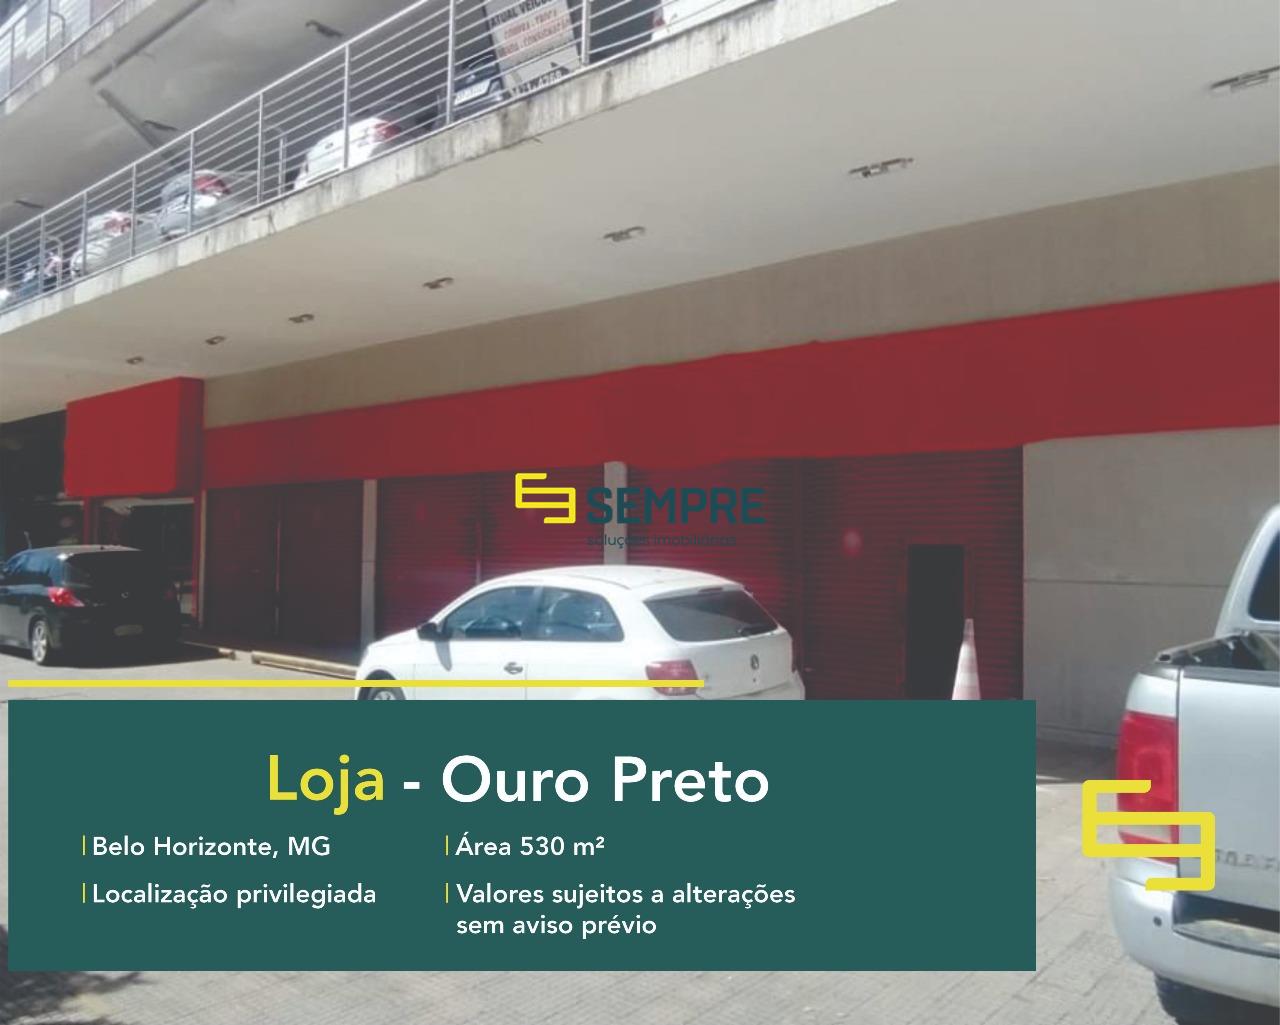 Loja para alugar no Ouro Preto em BH. Locação de pontos comerciais nas melhores localidades de Belo Horizonte!